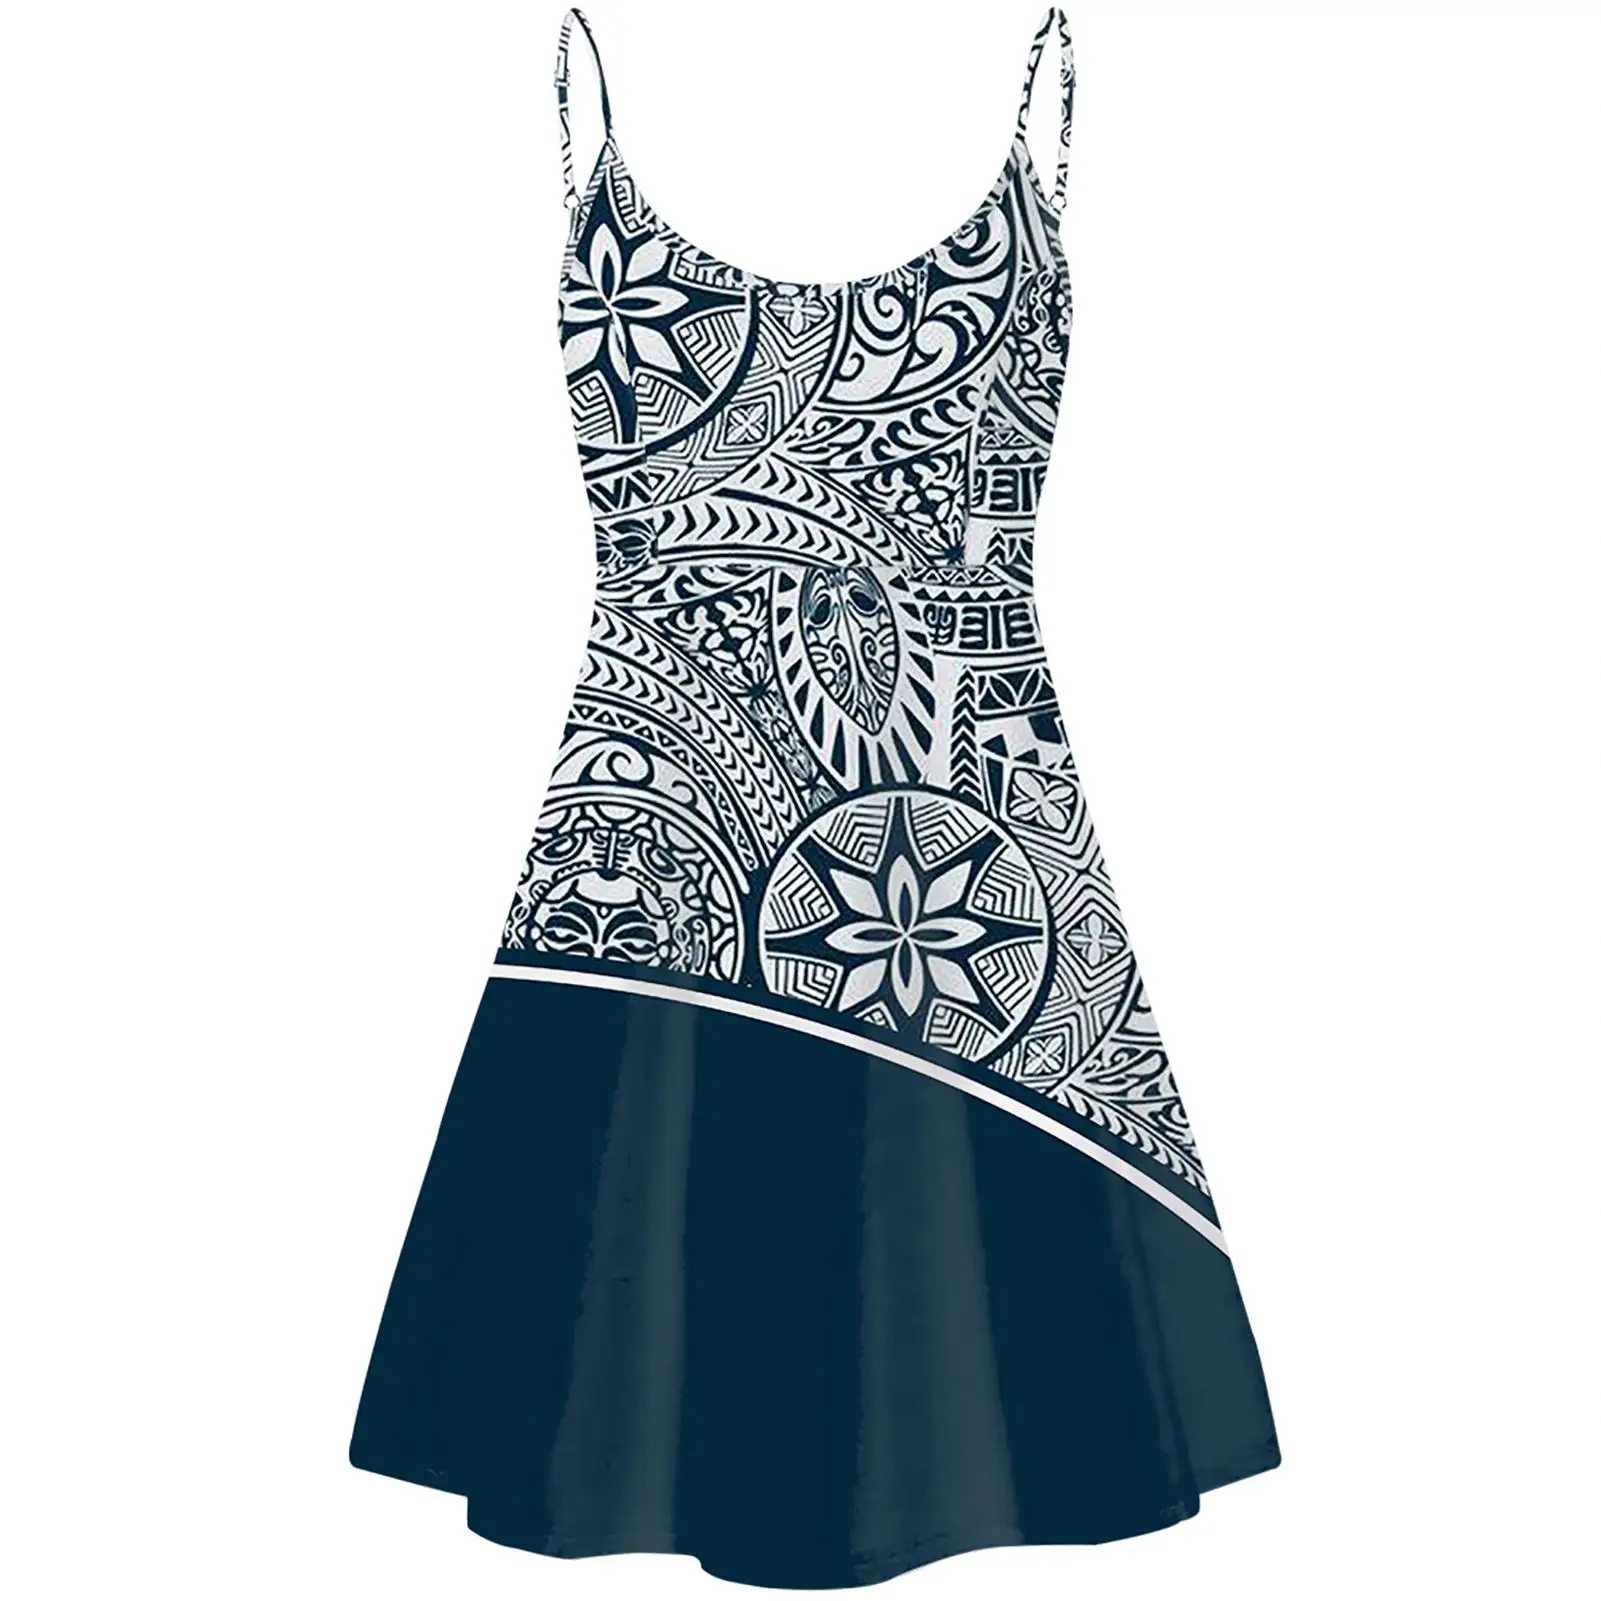 공장 가격 비치 드레스 여성 뜨거운 판매 여성 캐주얼 드레스 Polynesian 인쇄 직물 사용자 정의 패턴 또는 로고 캐주얼 드레스